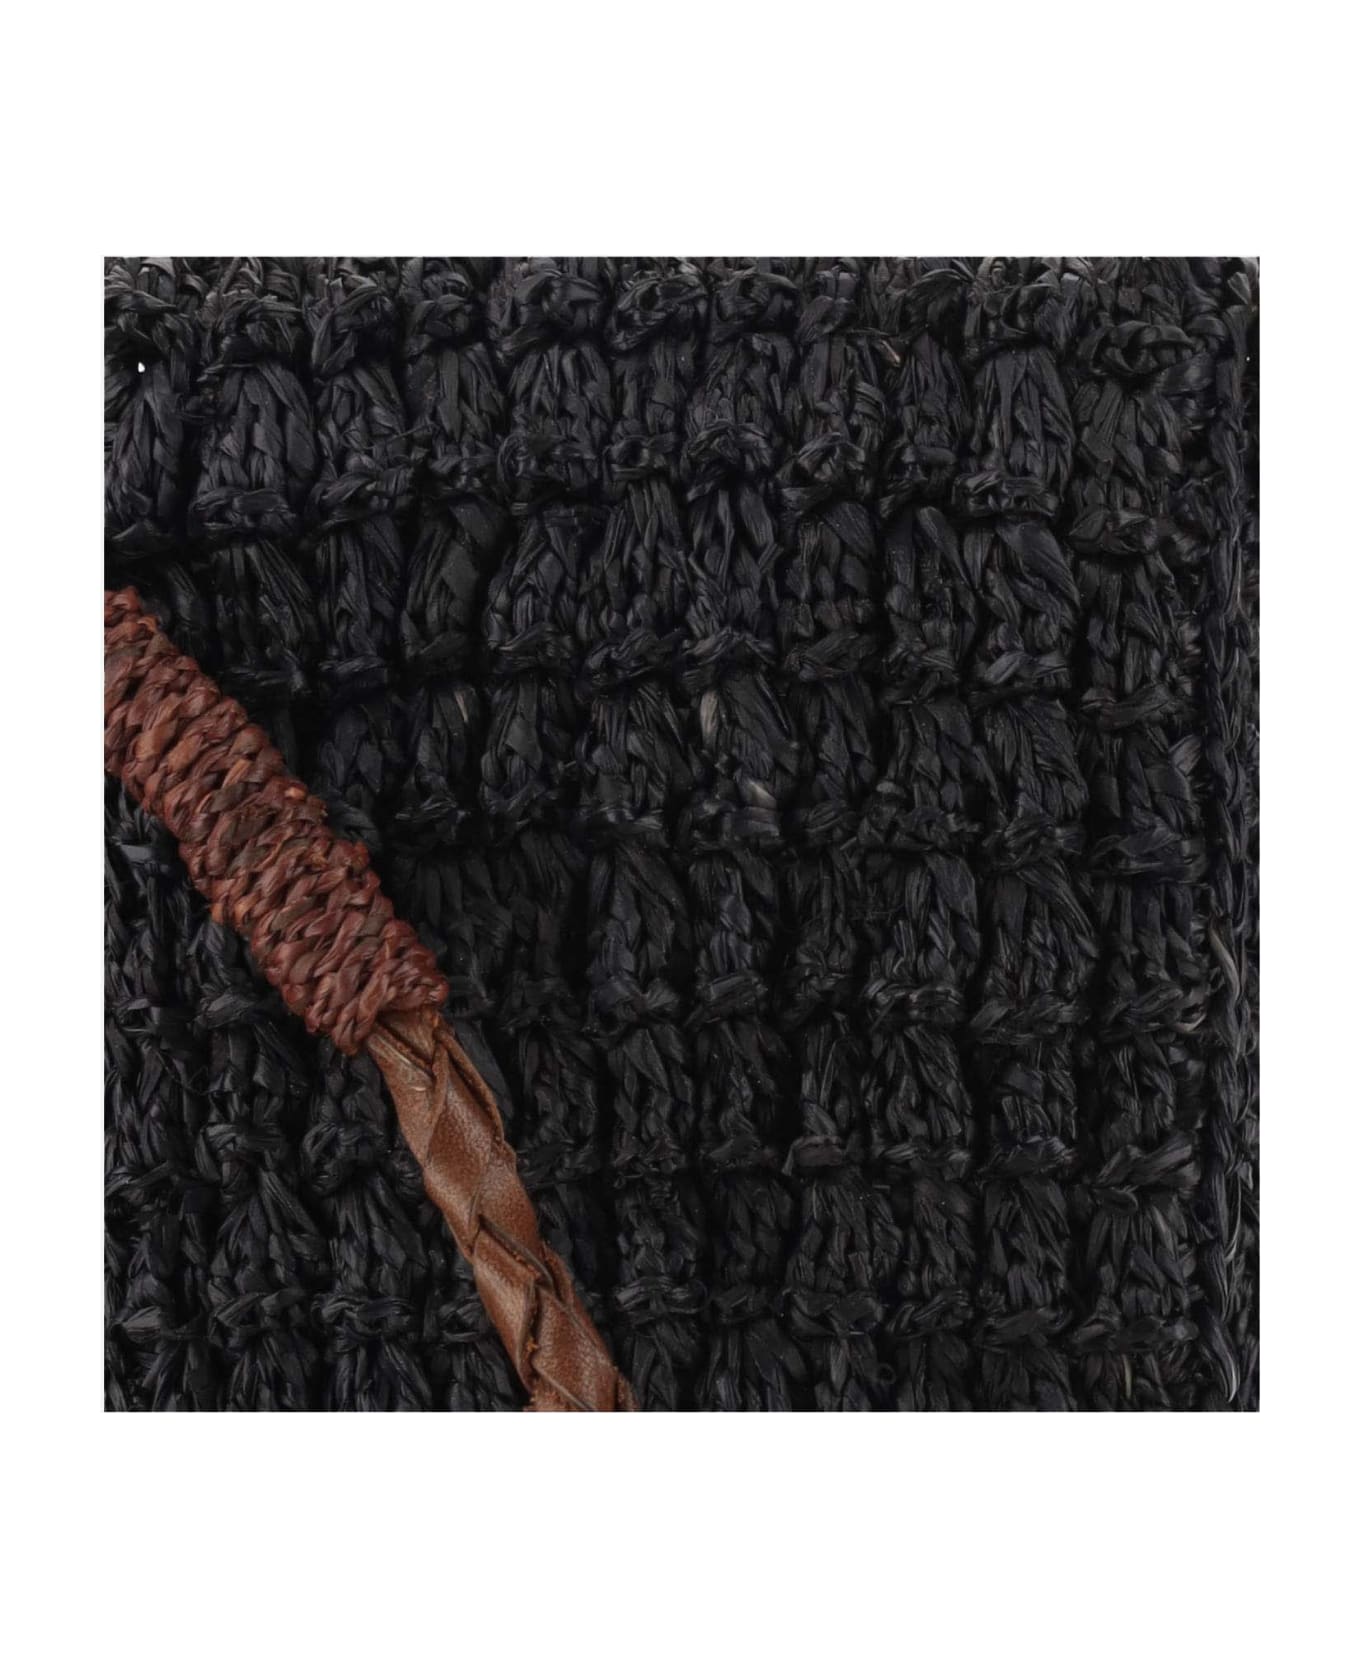 Ibeliv Raffia Bag With Leather Details - Black